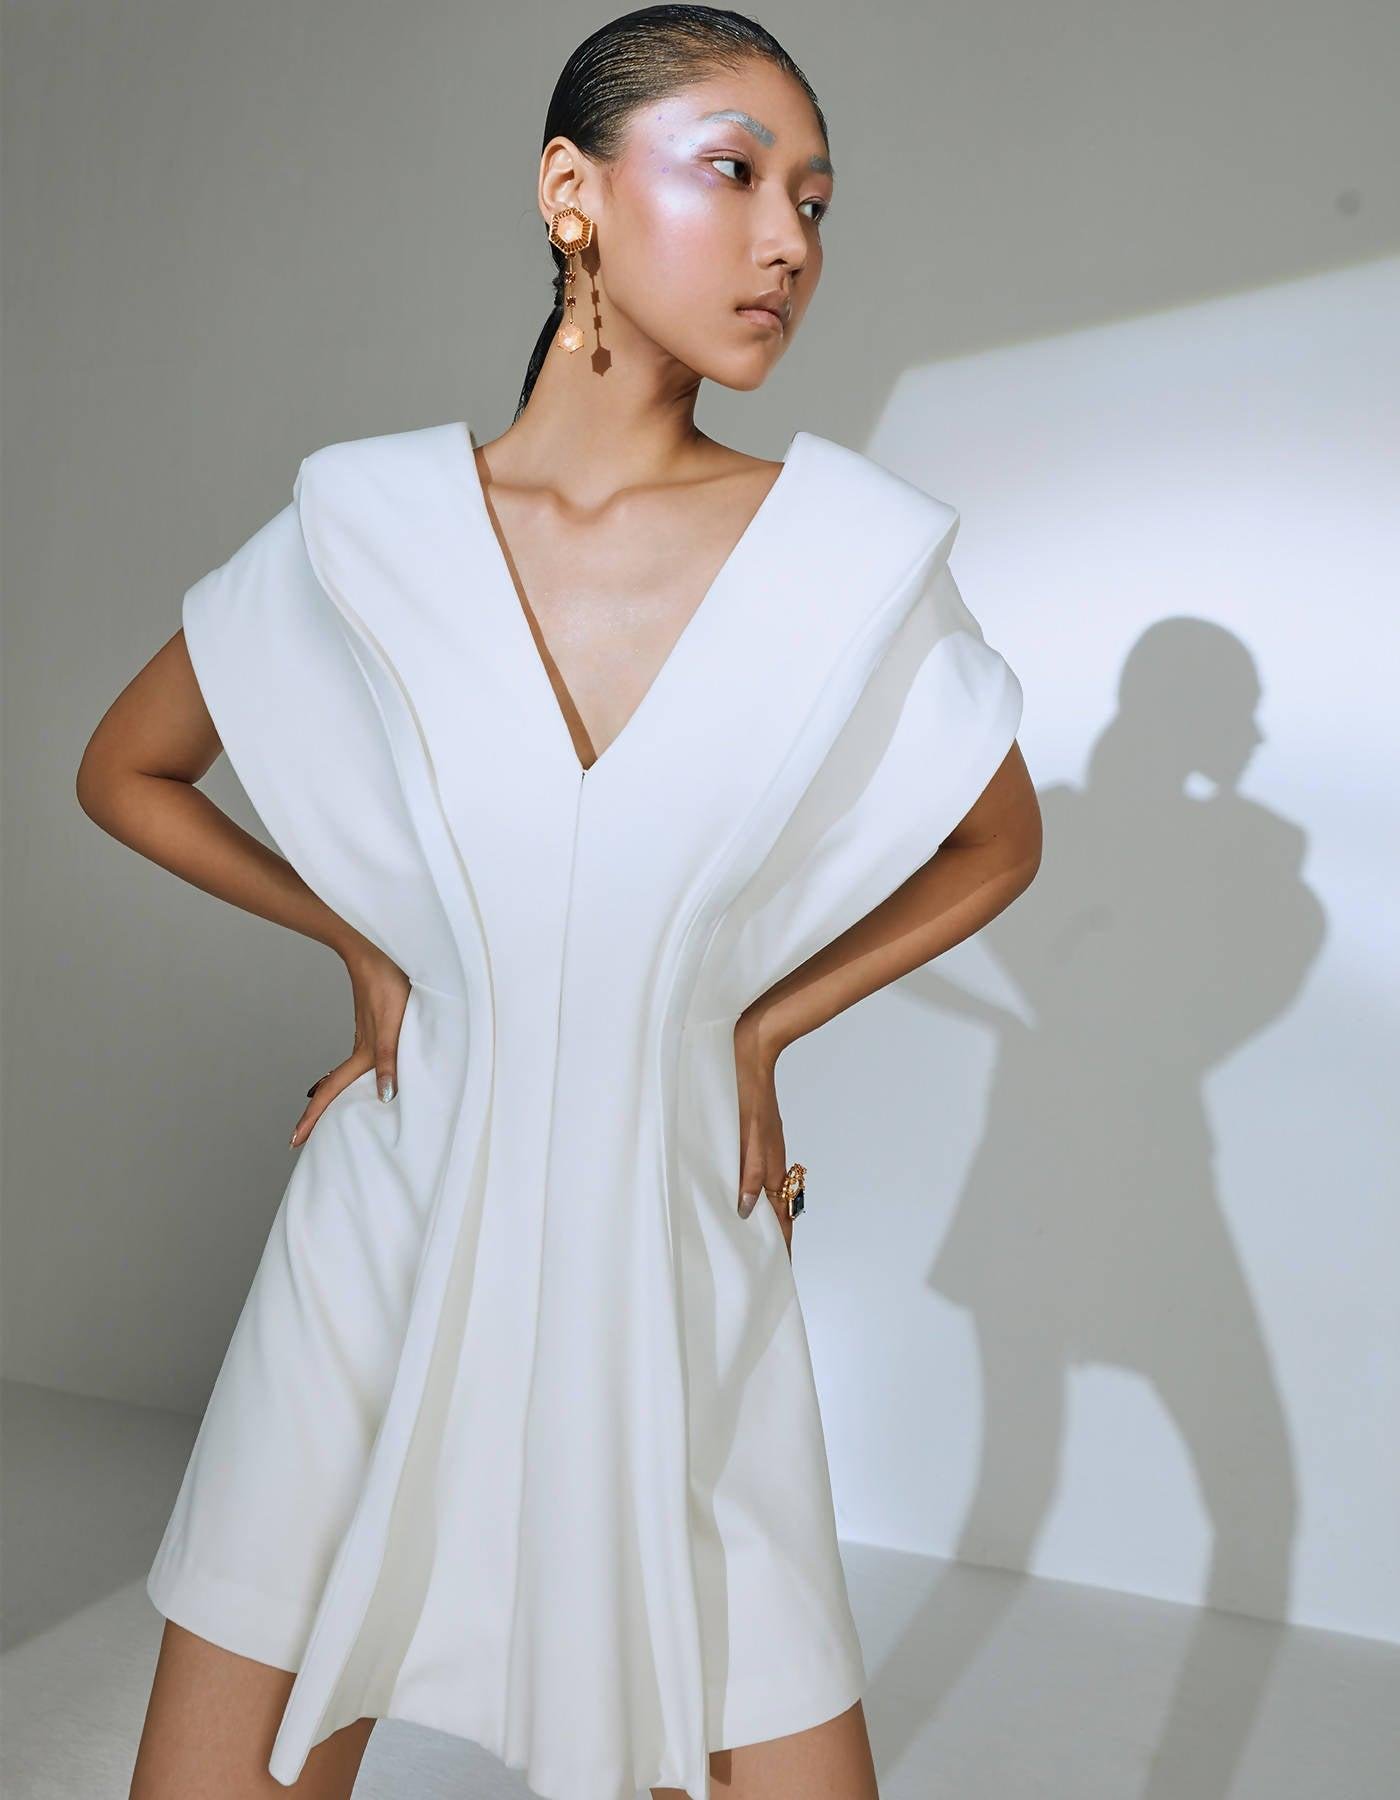 Structured Jacket Dress in White by MANNATT GUPTA